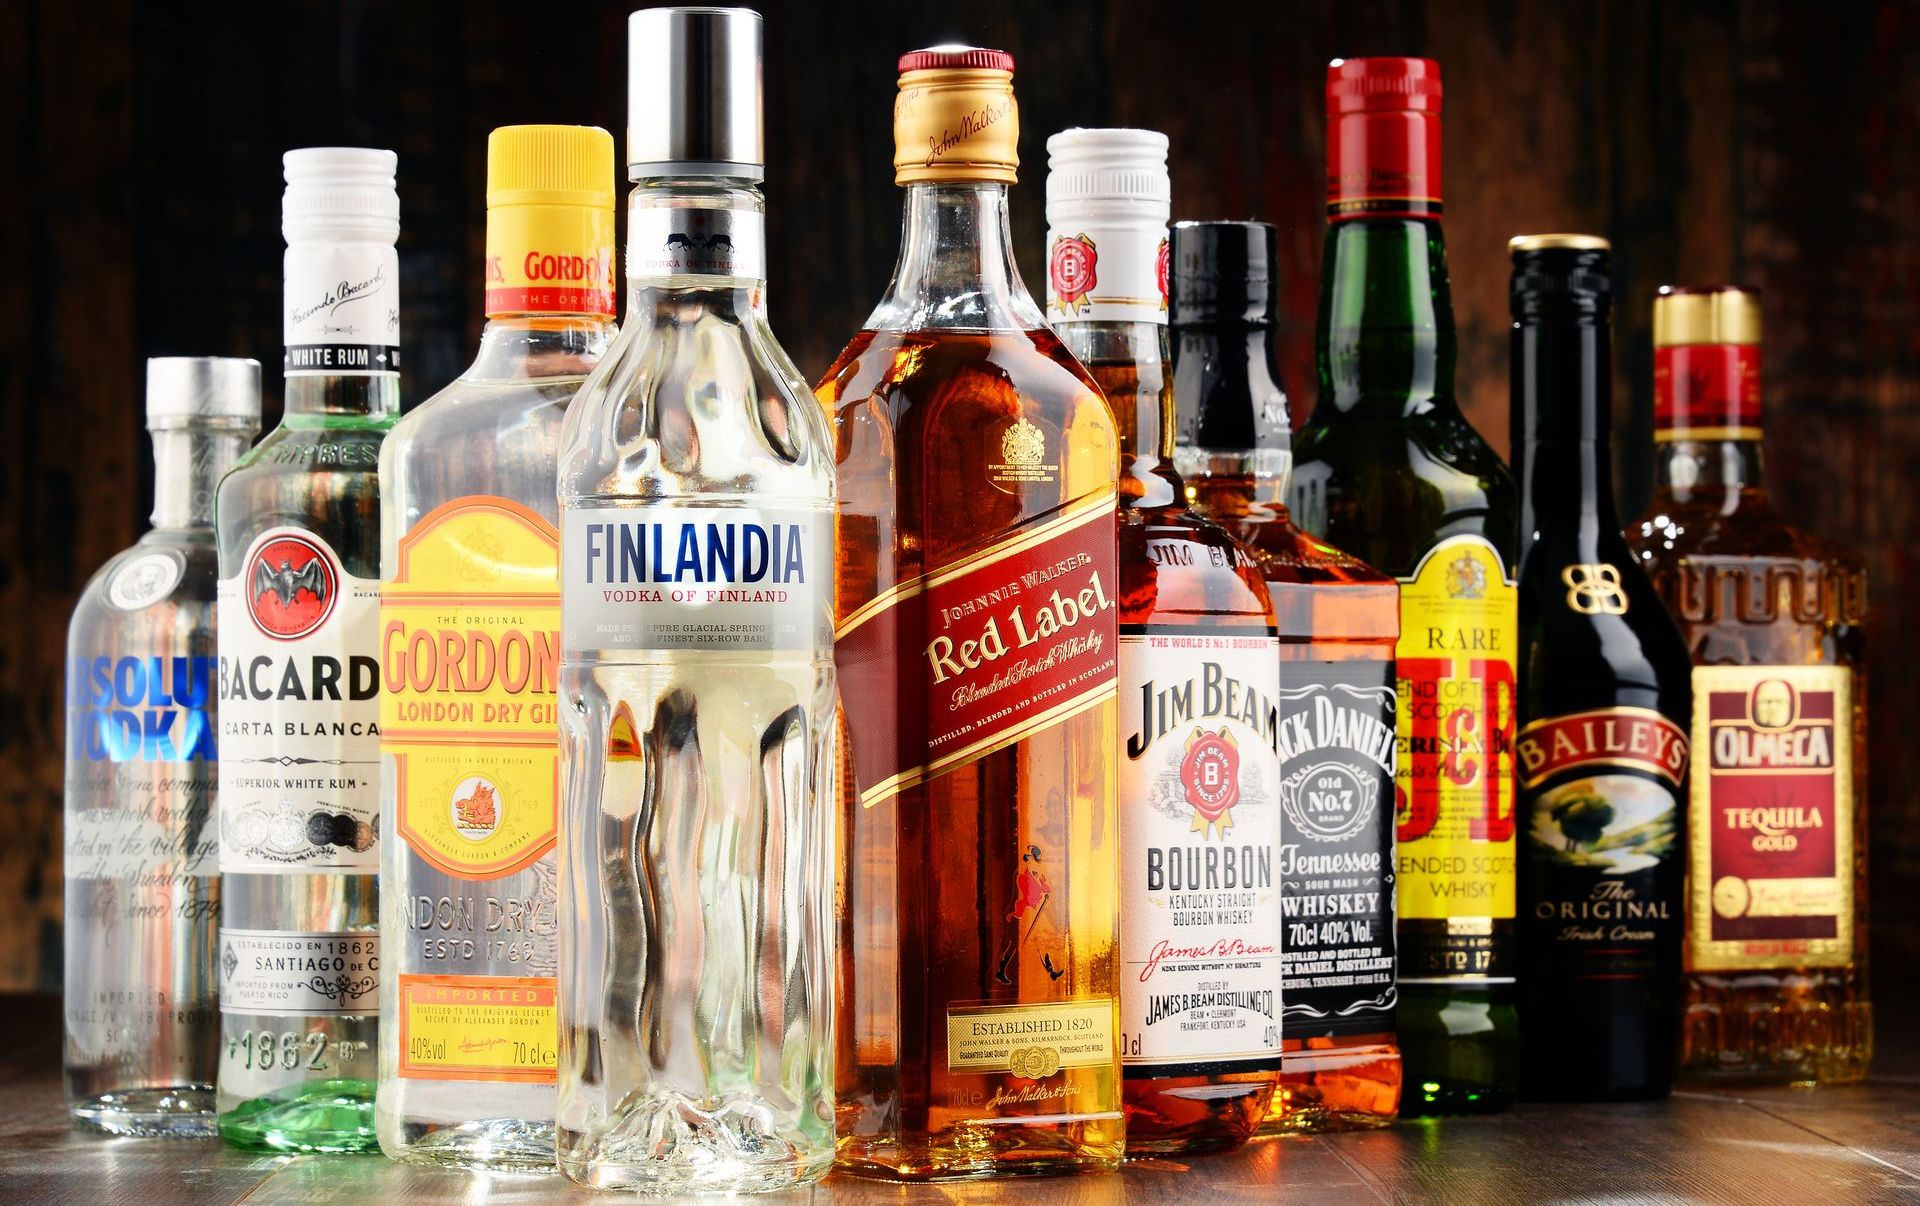 Die Studie erklären, wie Alkohol schädigt die DNA und erhöht das Risiko von Krebs